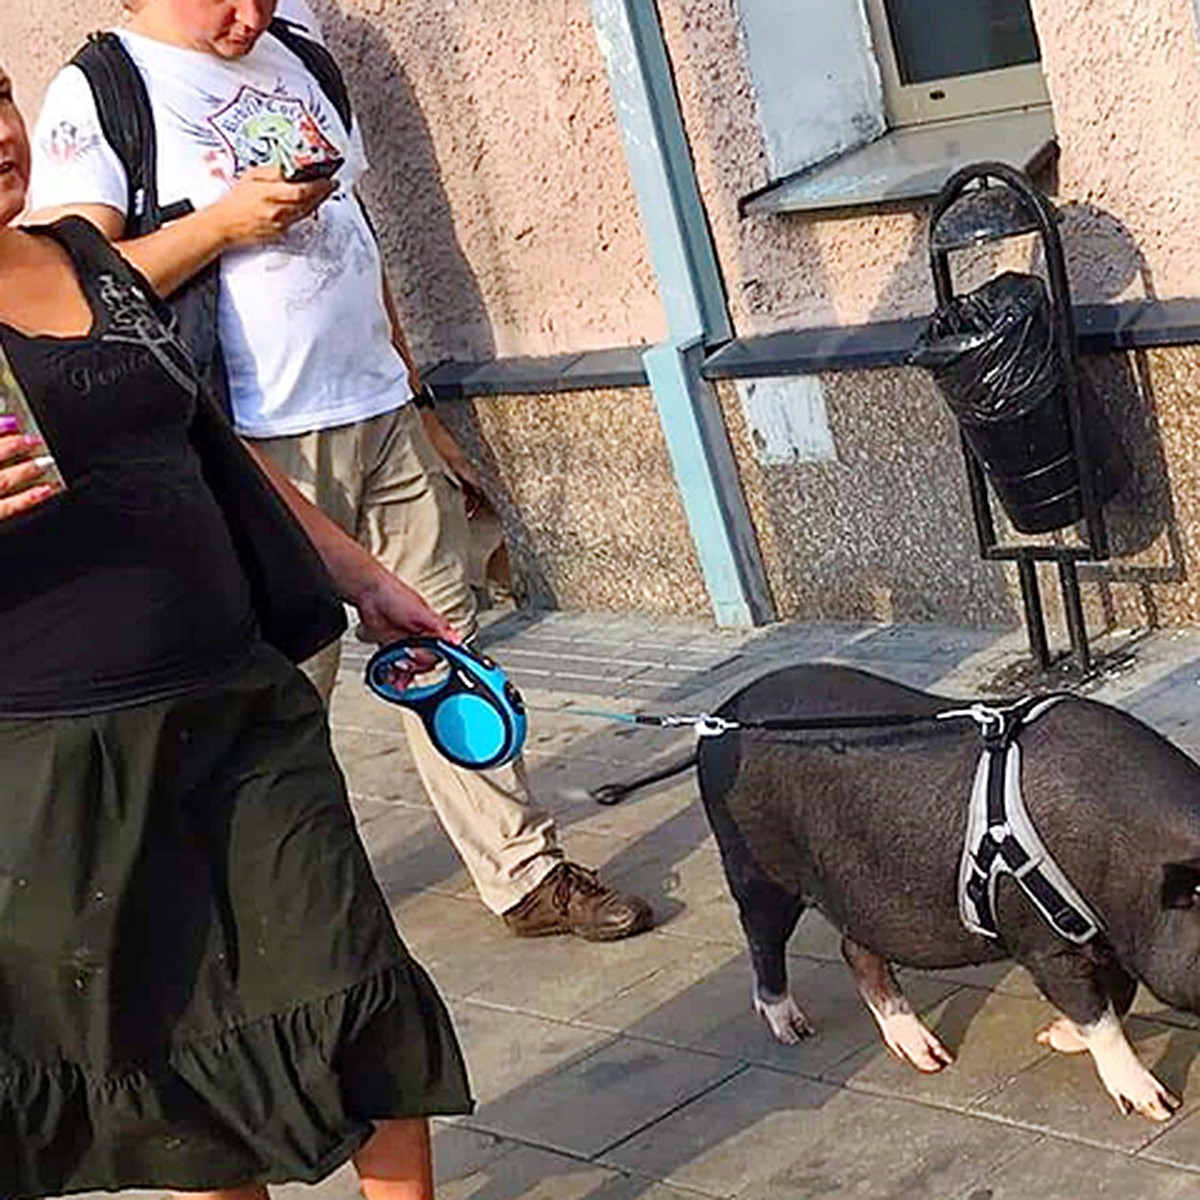 В центре Москвы заметили женщину, выгуливающую огромную свинью на поводке